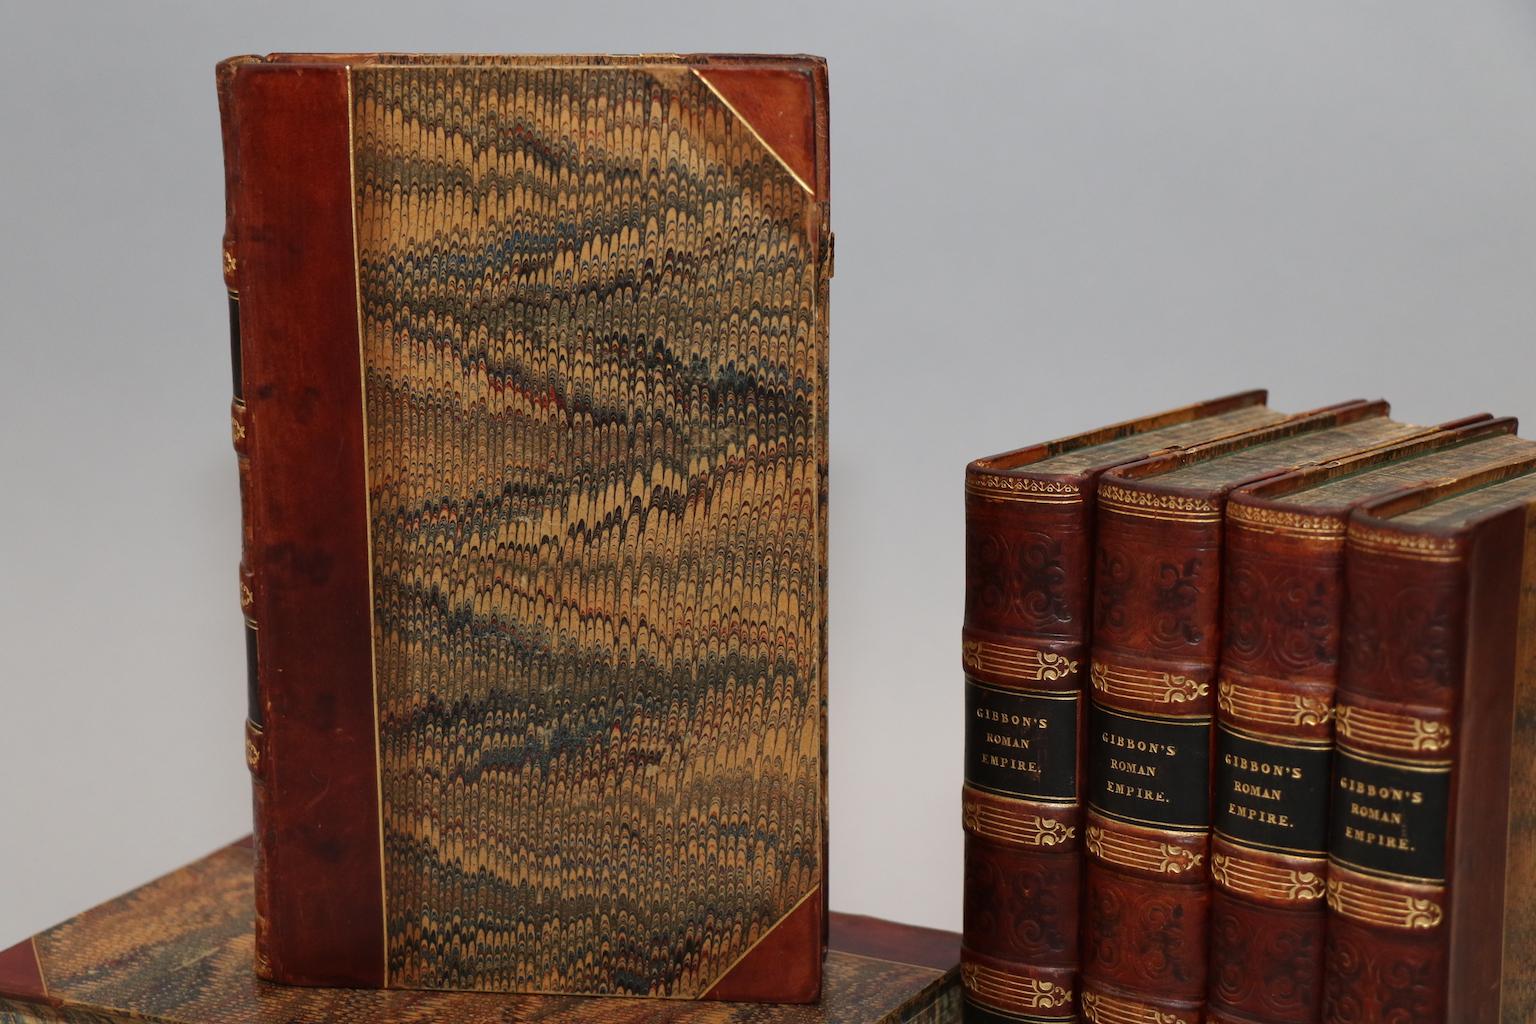 Dyed Books, Edward Gibbon's 